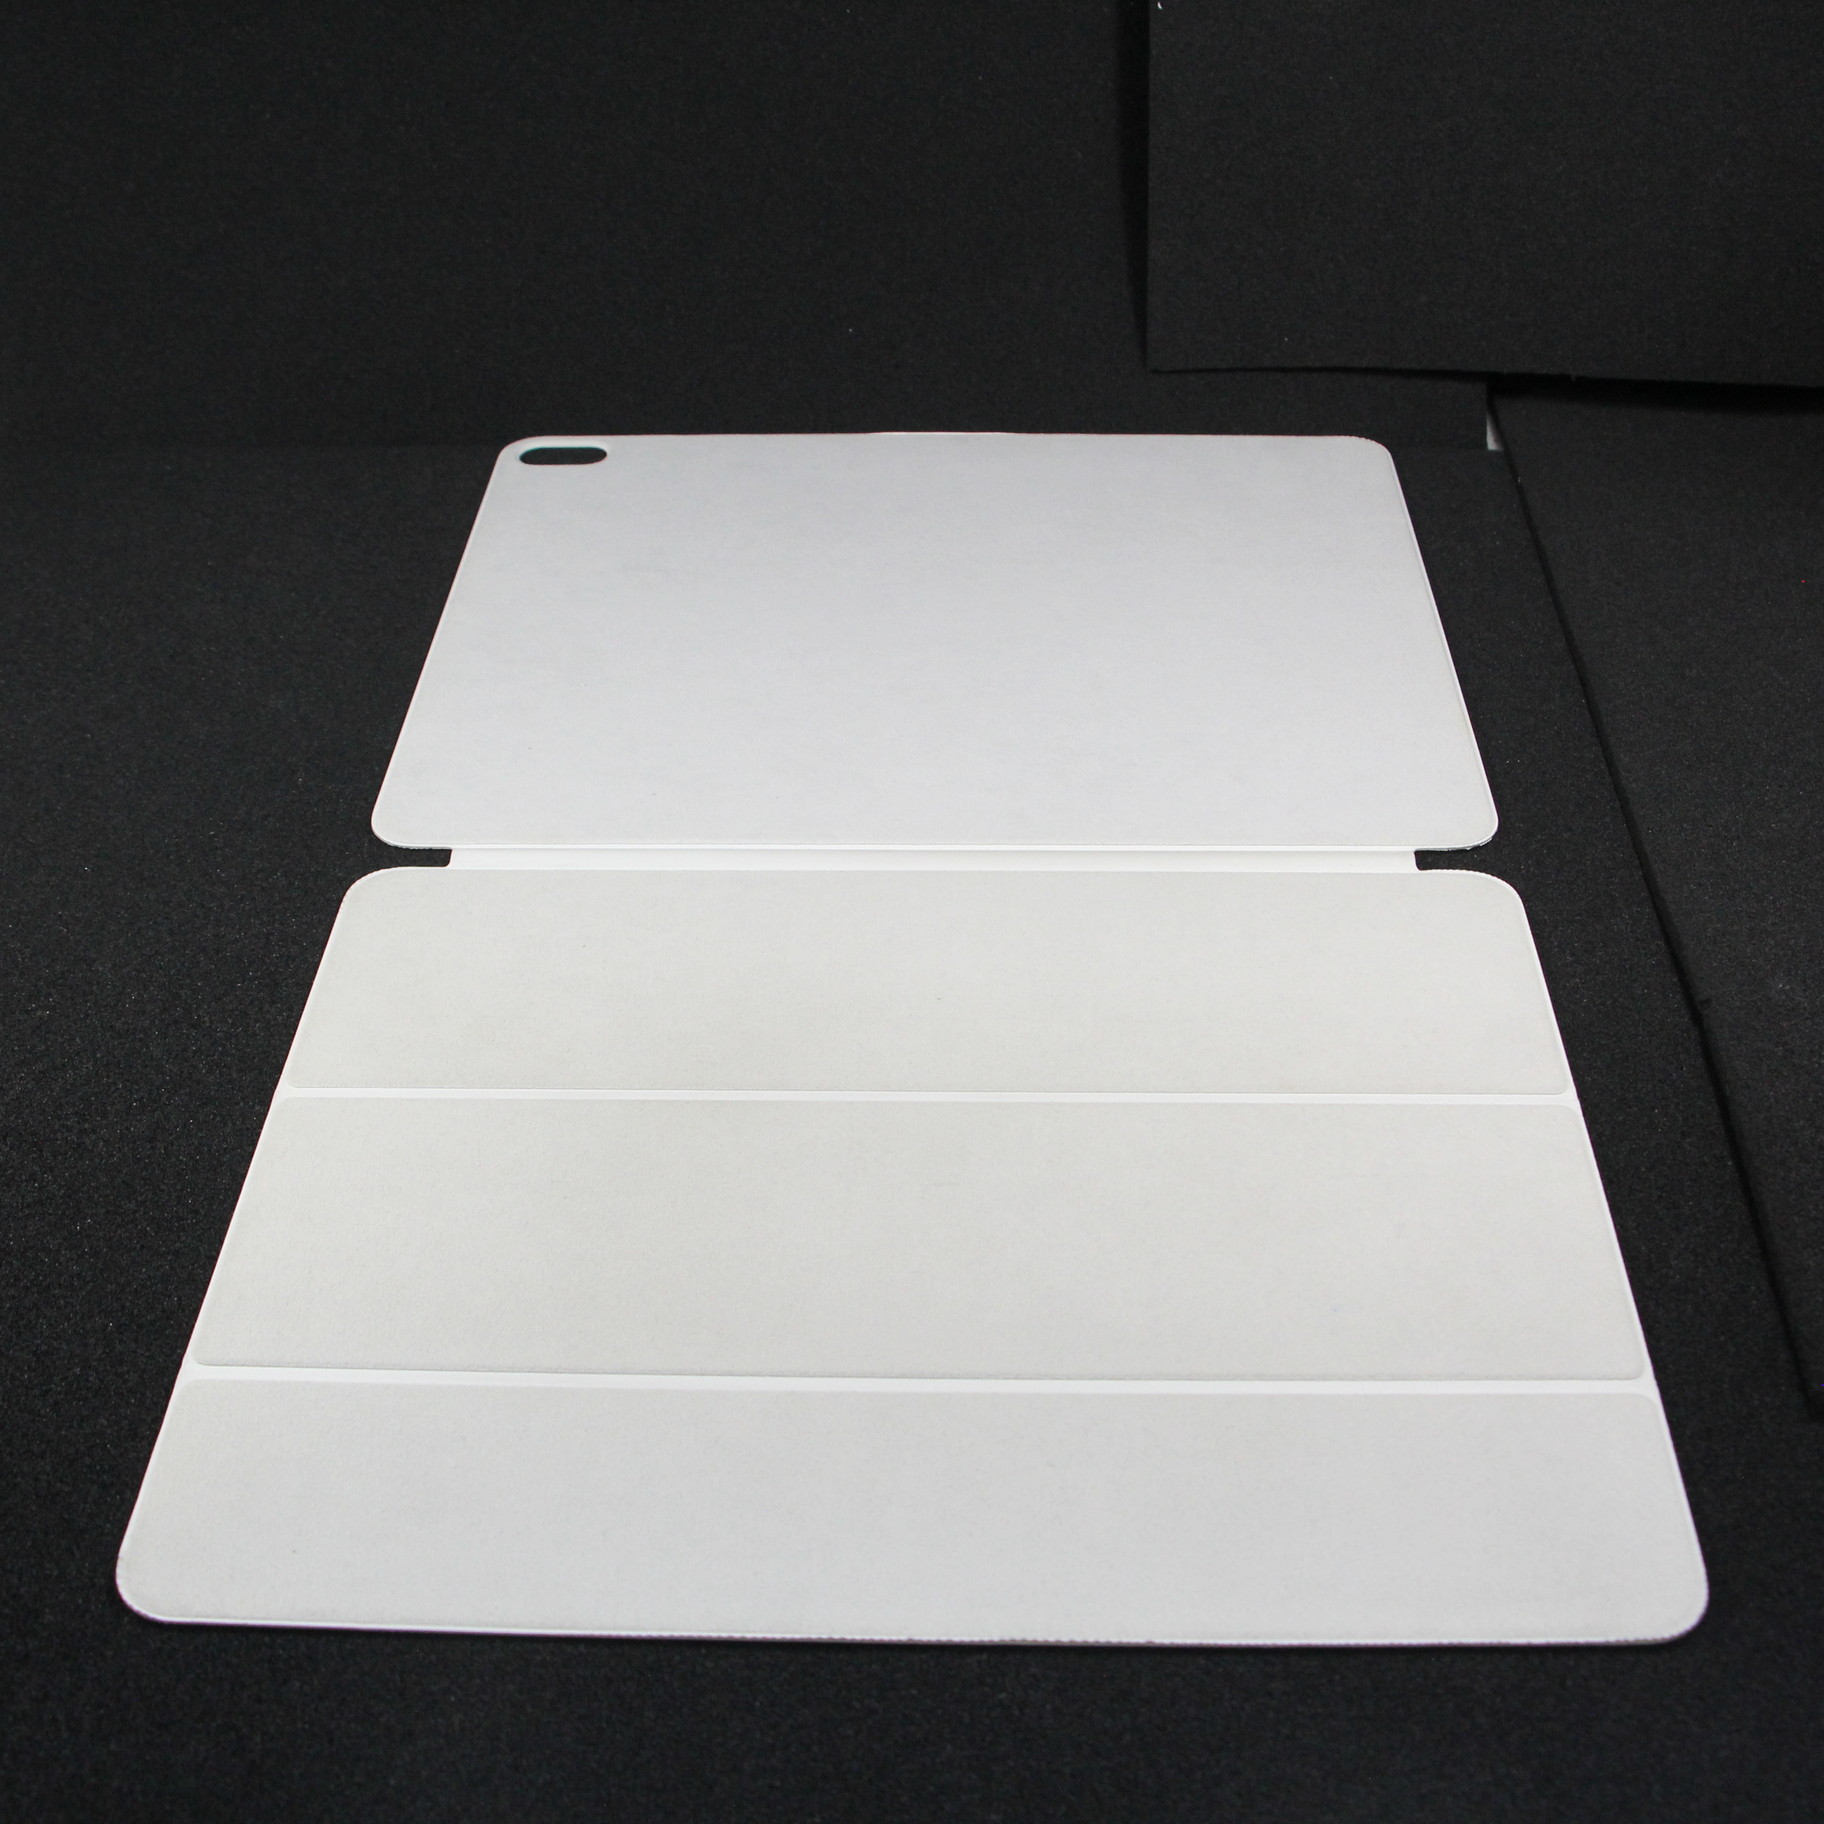 12.9インチ iPad Pro用 Smart Folio MRXE2FE／A ホワイト